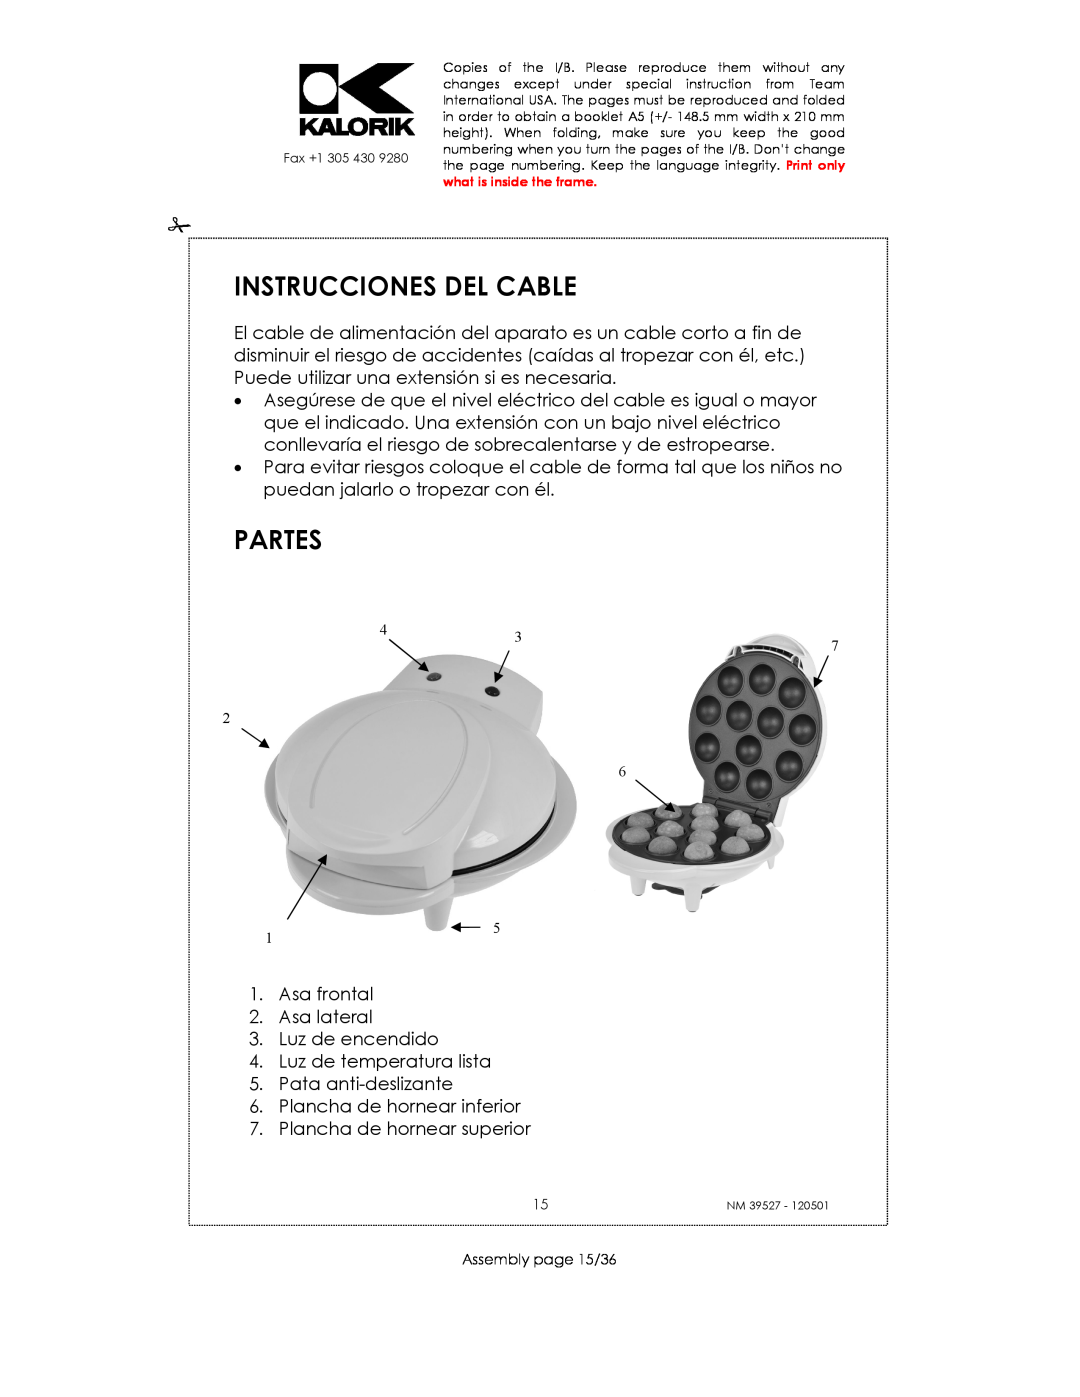 Kalorik NM 39527 manual Instrucciones Del Cable, Partes 